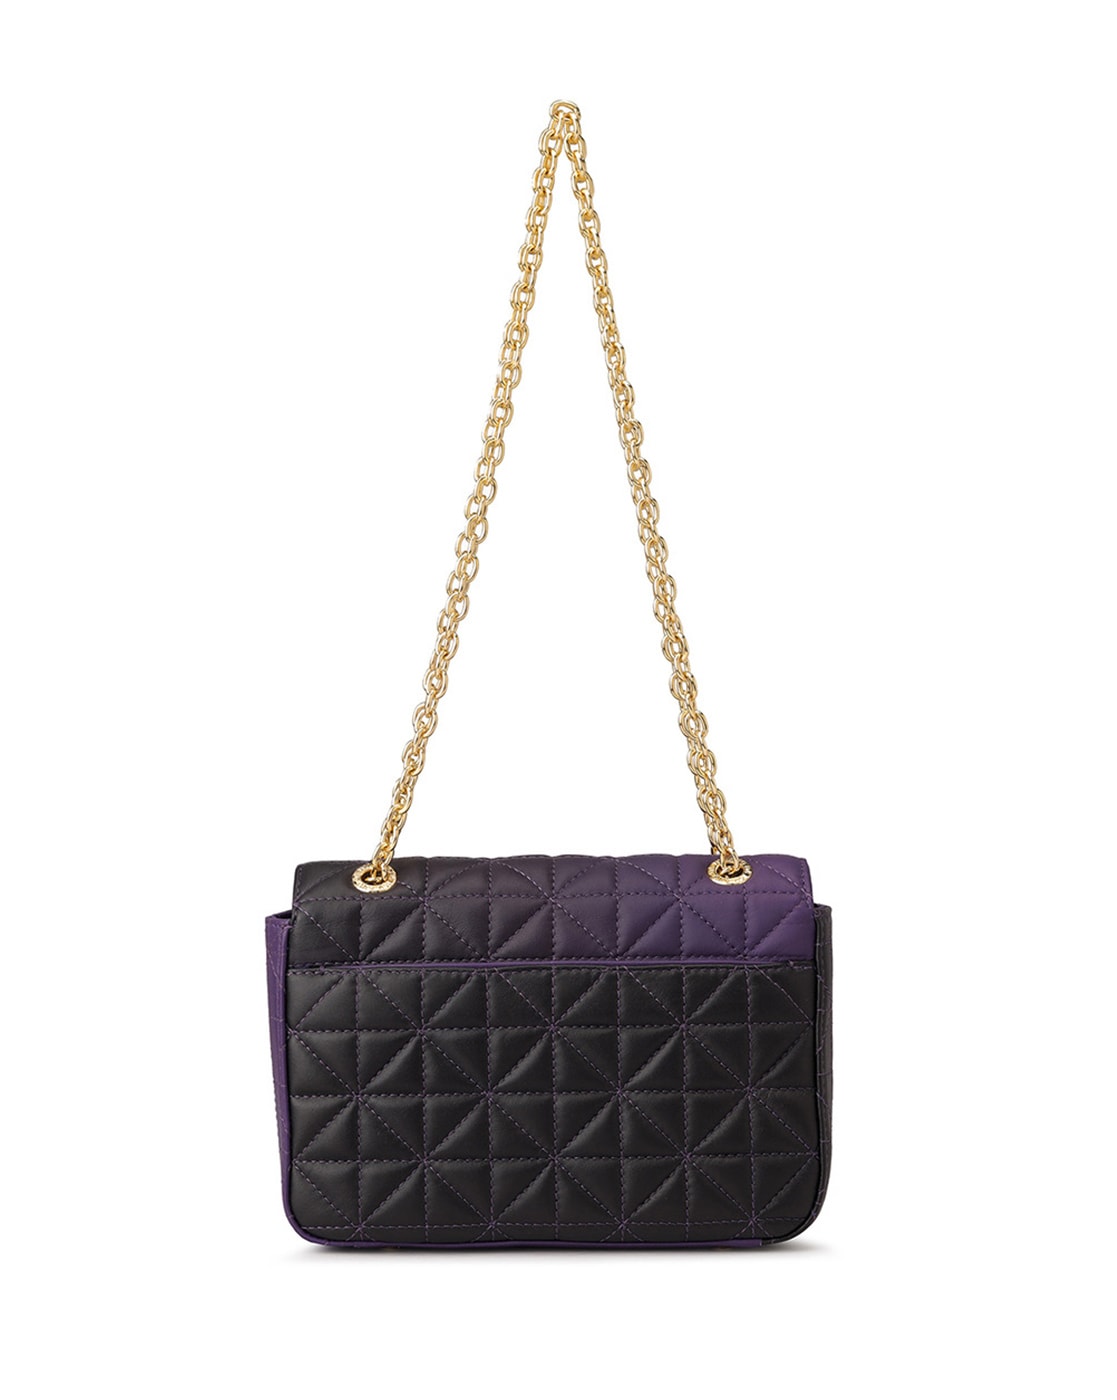 Buy Cara Mia Women Purple Handbag PURPLE Online @ Best Price in India |  Flipkart.com